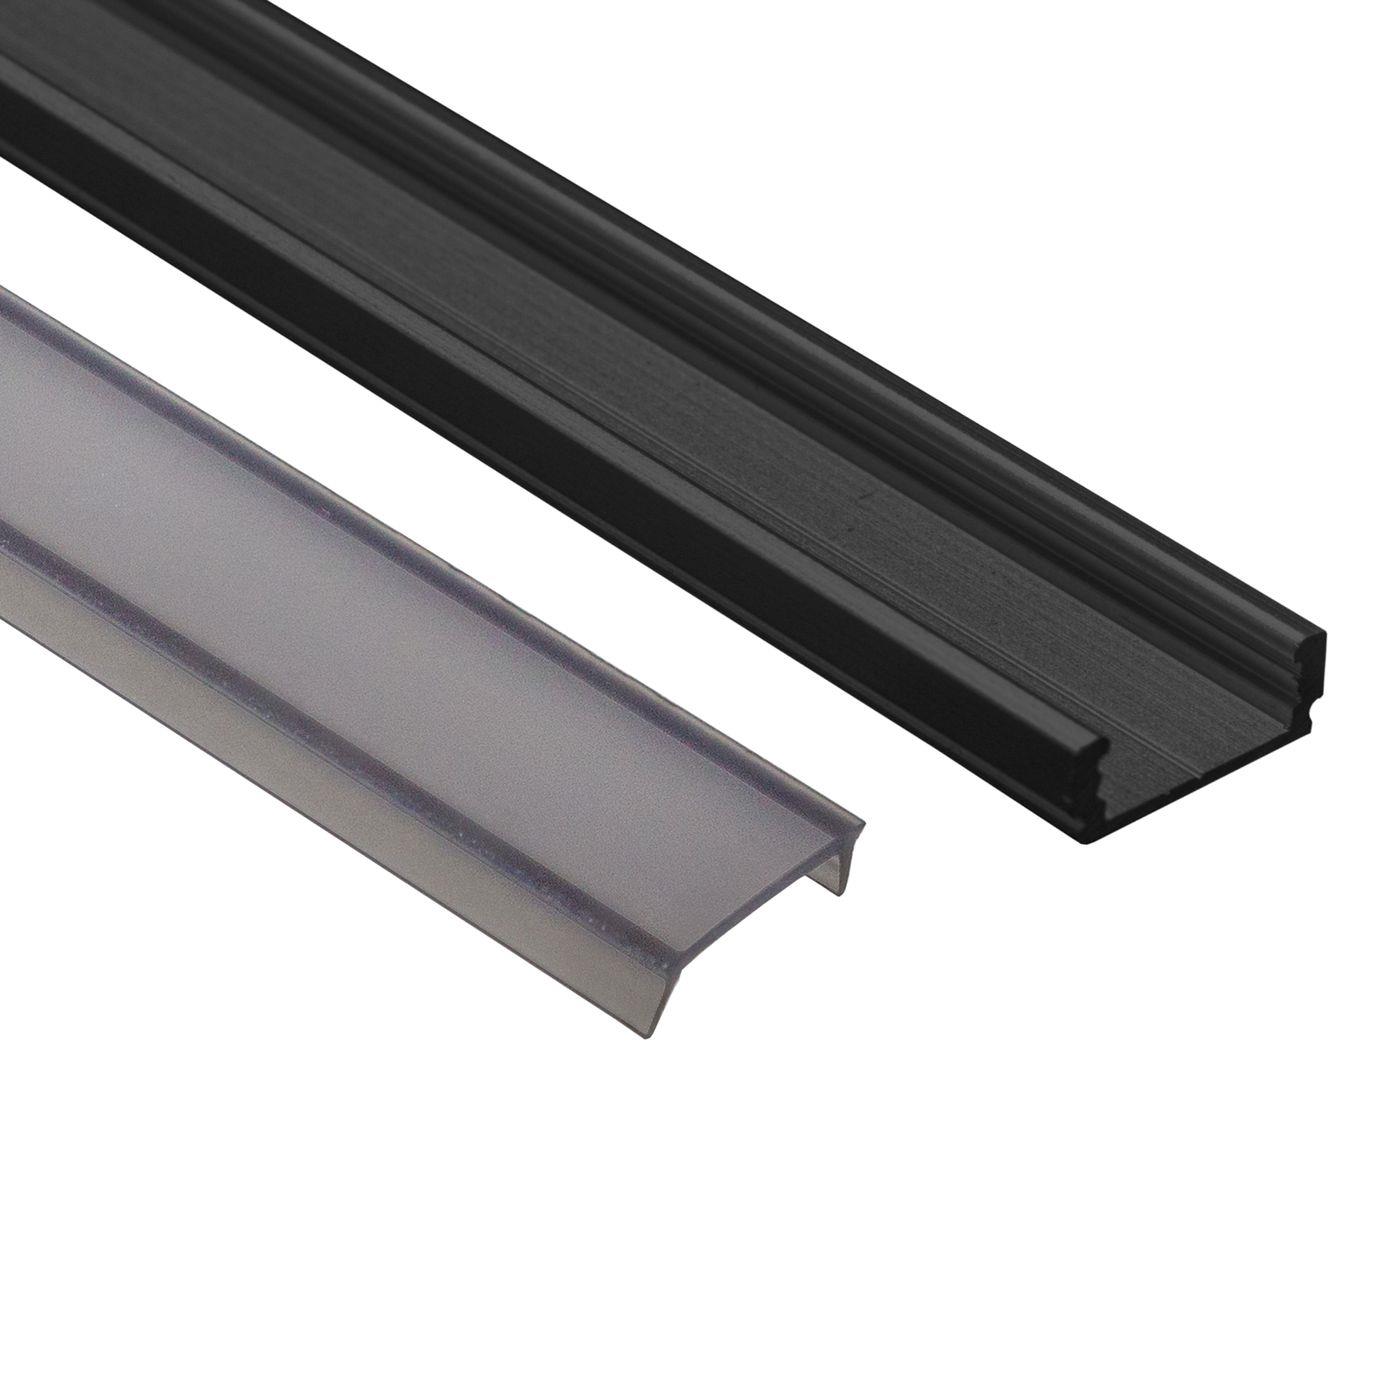 LED surface mount profile set 6m aluminum black black cover + Accessories 12mm strip